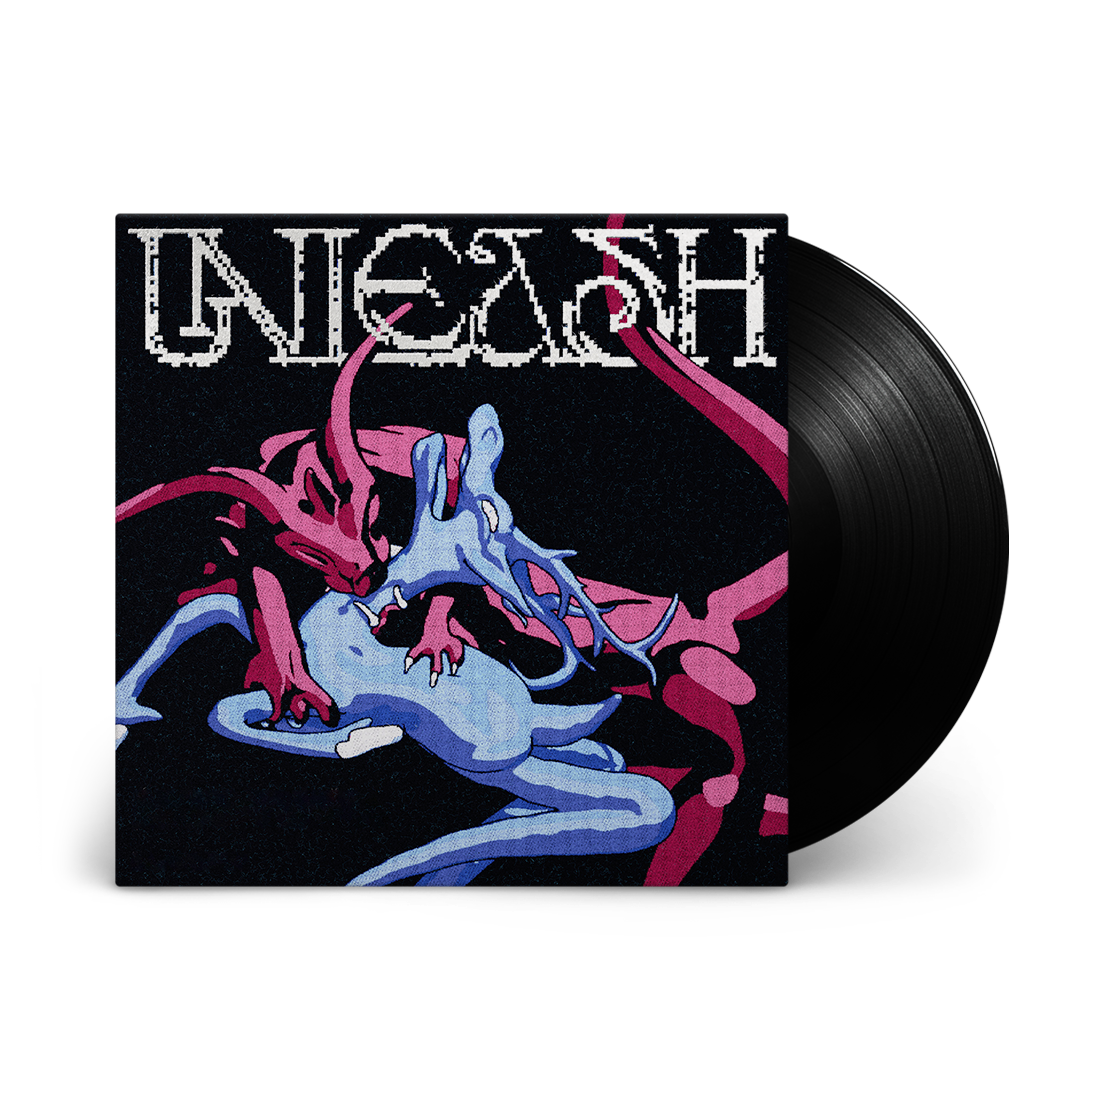 Heavee - Unleash: Vinyl LP